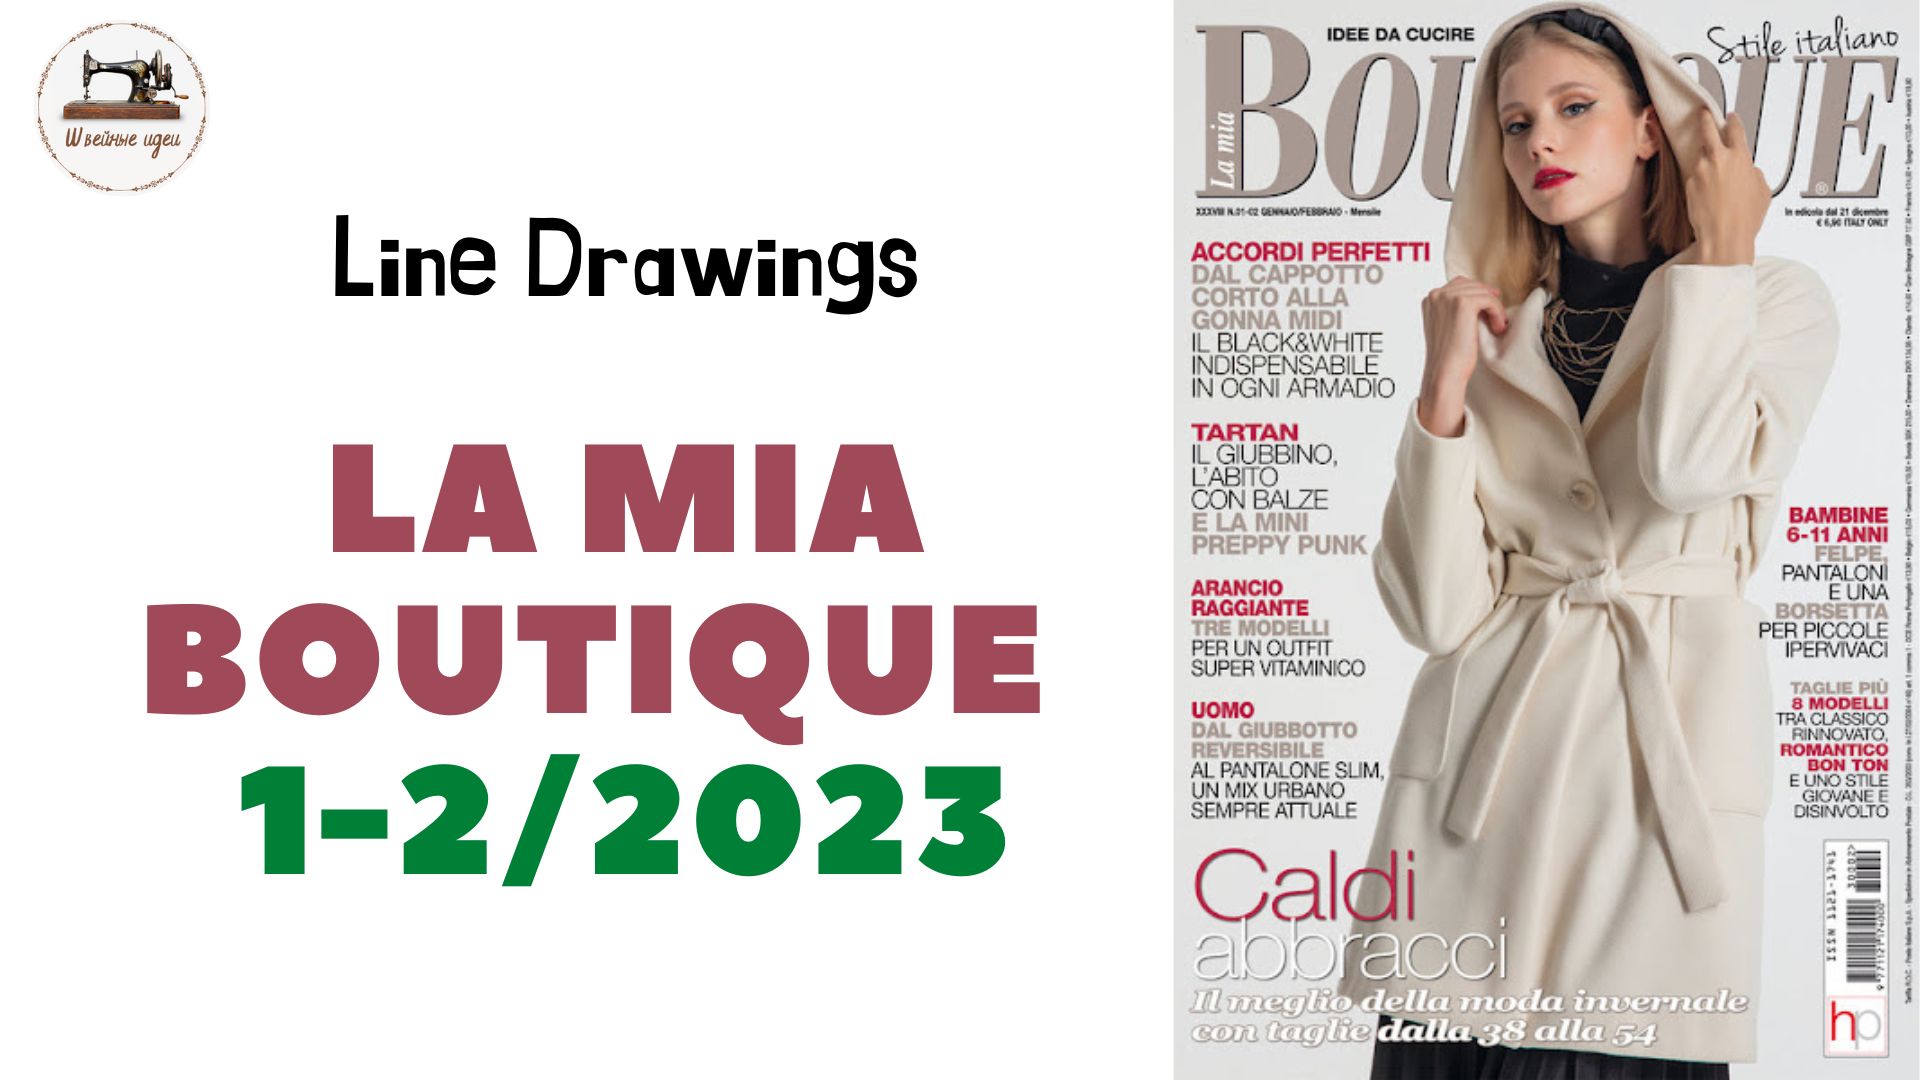 LA MIA BOUTIQUE 1-2/2023 Italy/ LINE DRAWINGS. Итальянский выпуск январь-февраль #boutiqueеtrends